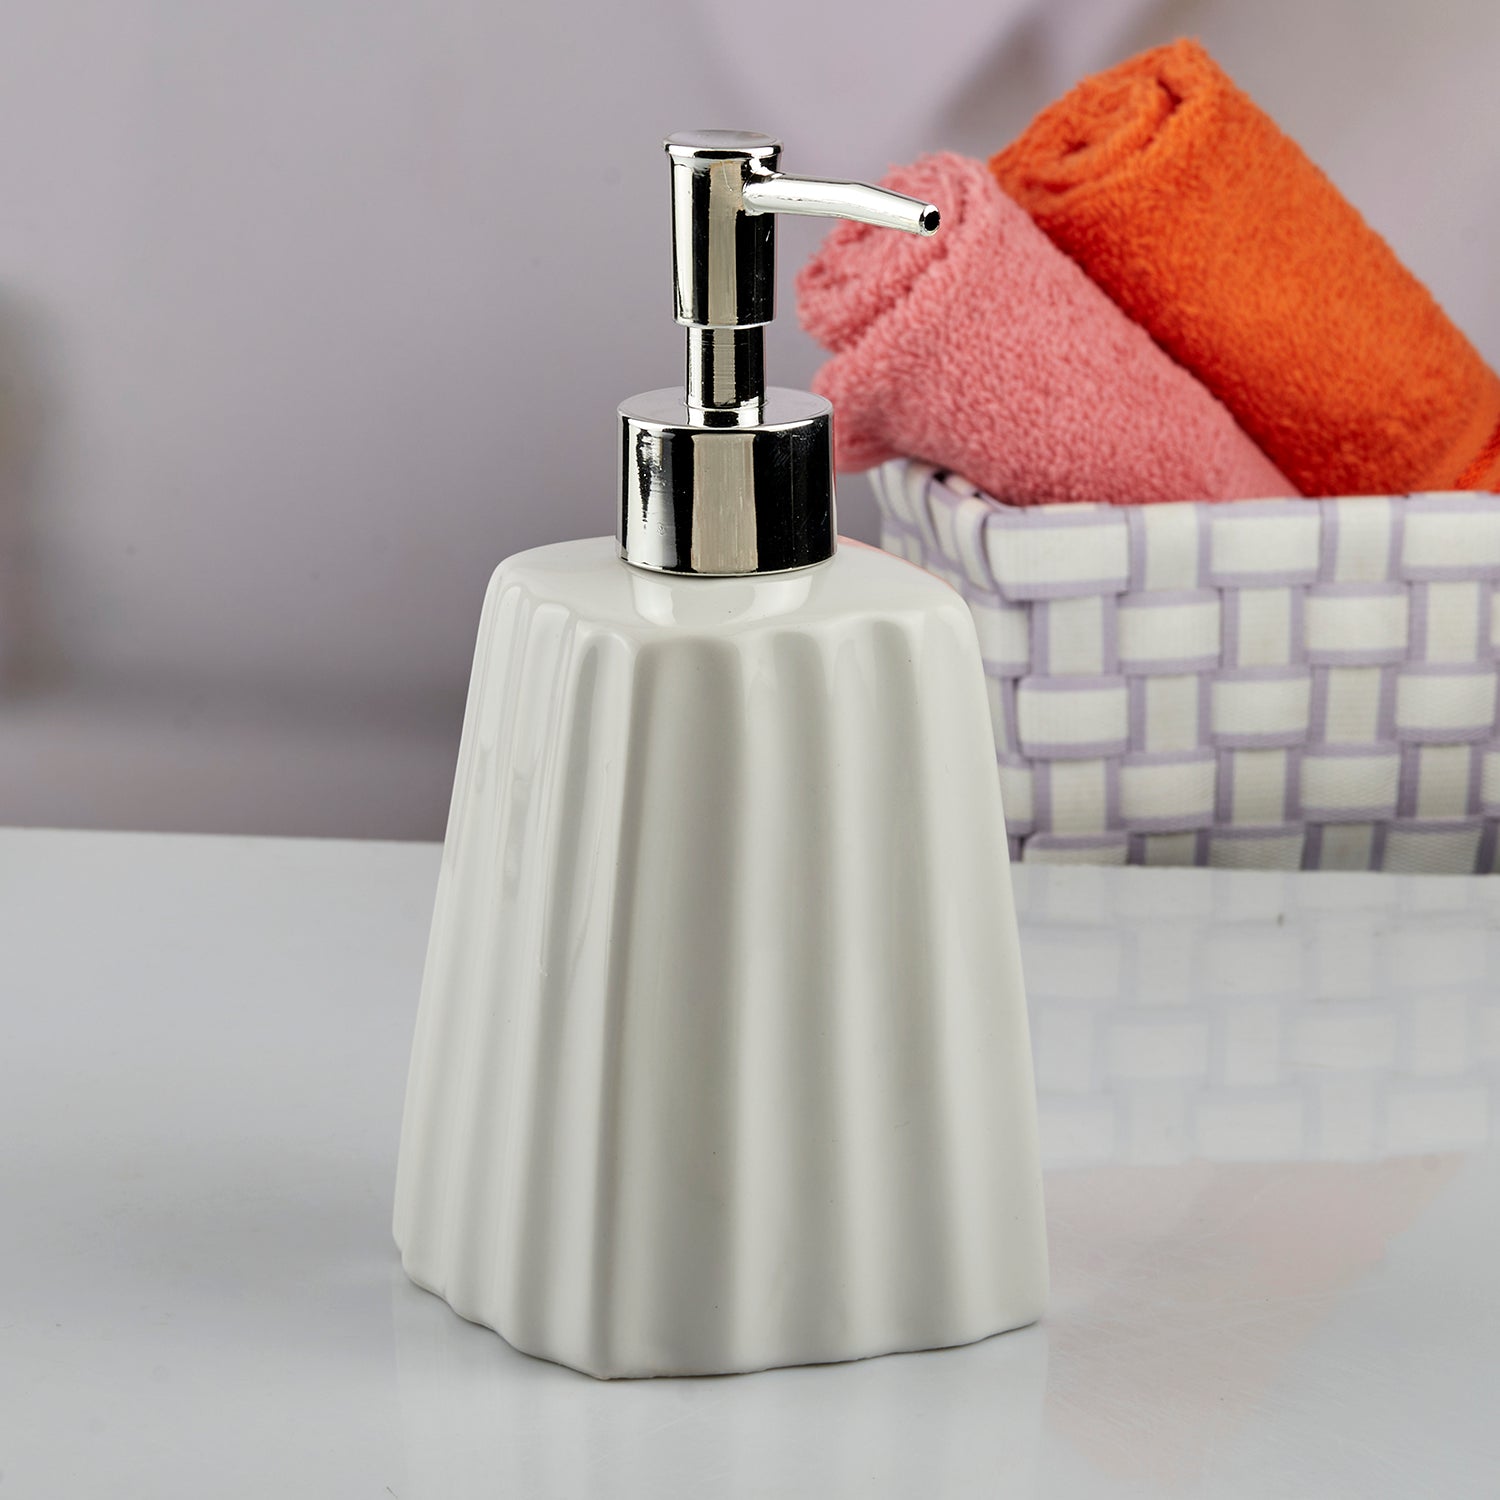 Ceramic Soap Dispenser liquid handwash pump for Bathroom, Set of 1, White (10594)